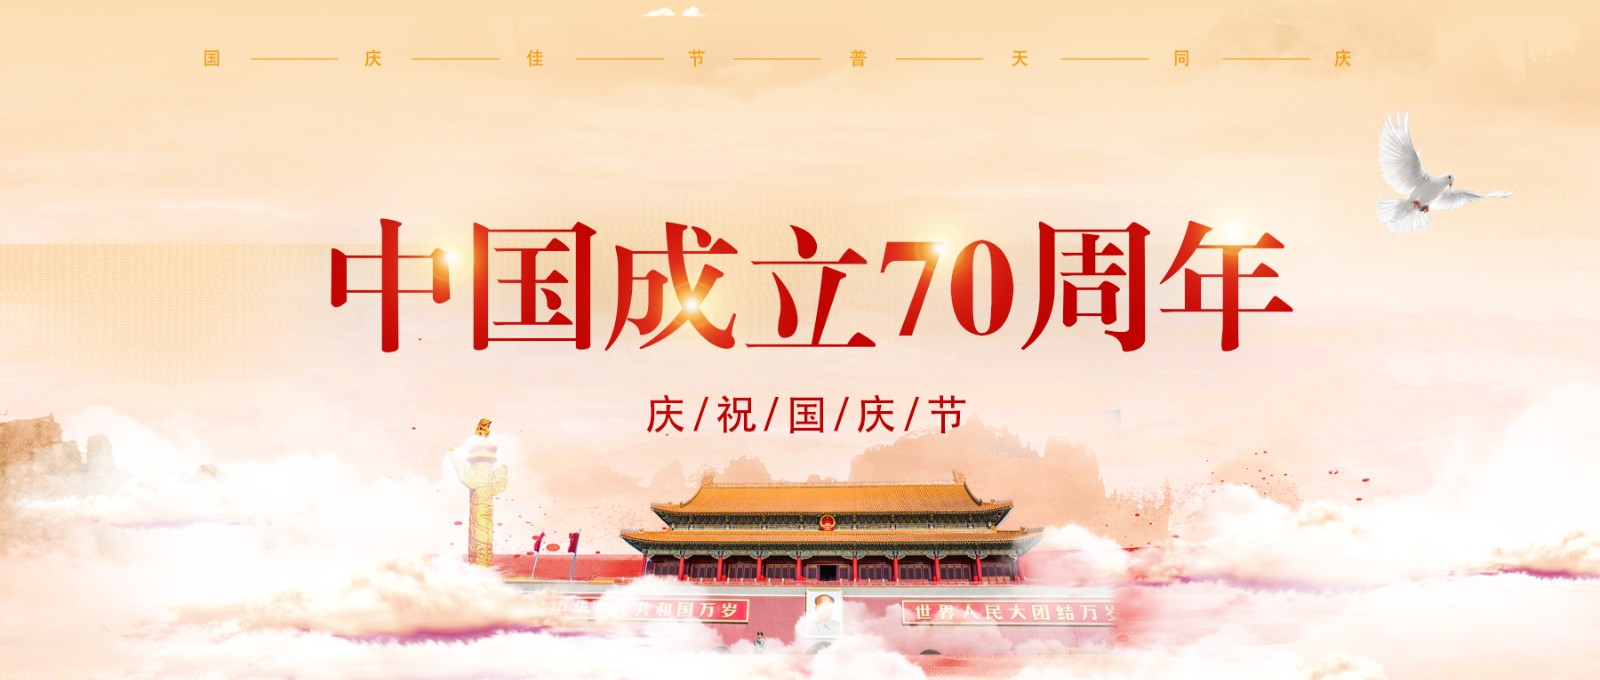 新中国成立70周年|国庆佳节,洛氏路全体员工为"阿中哥哥"庆生